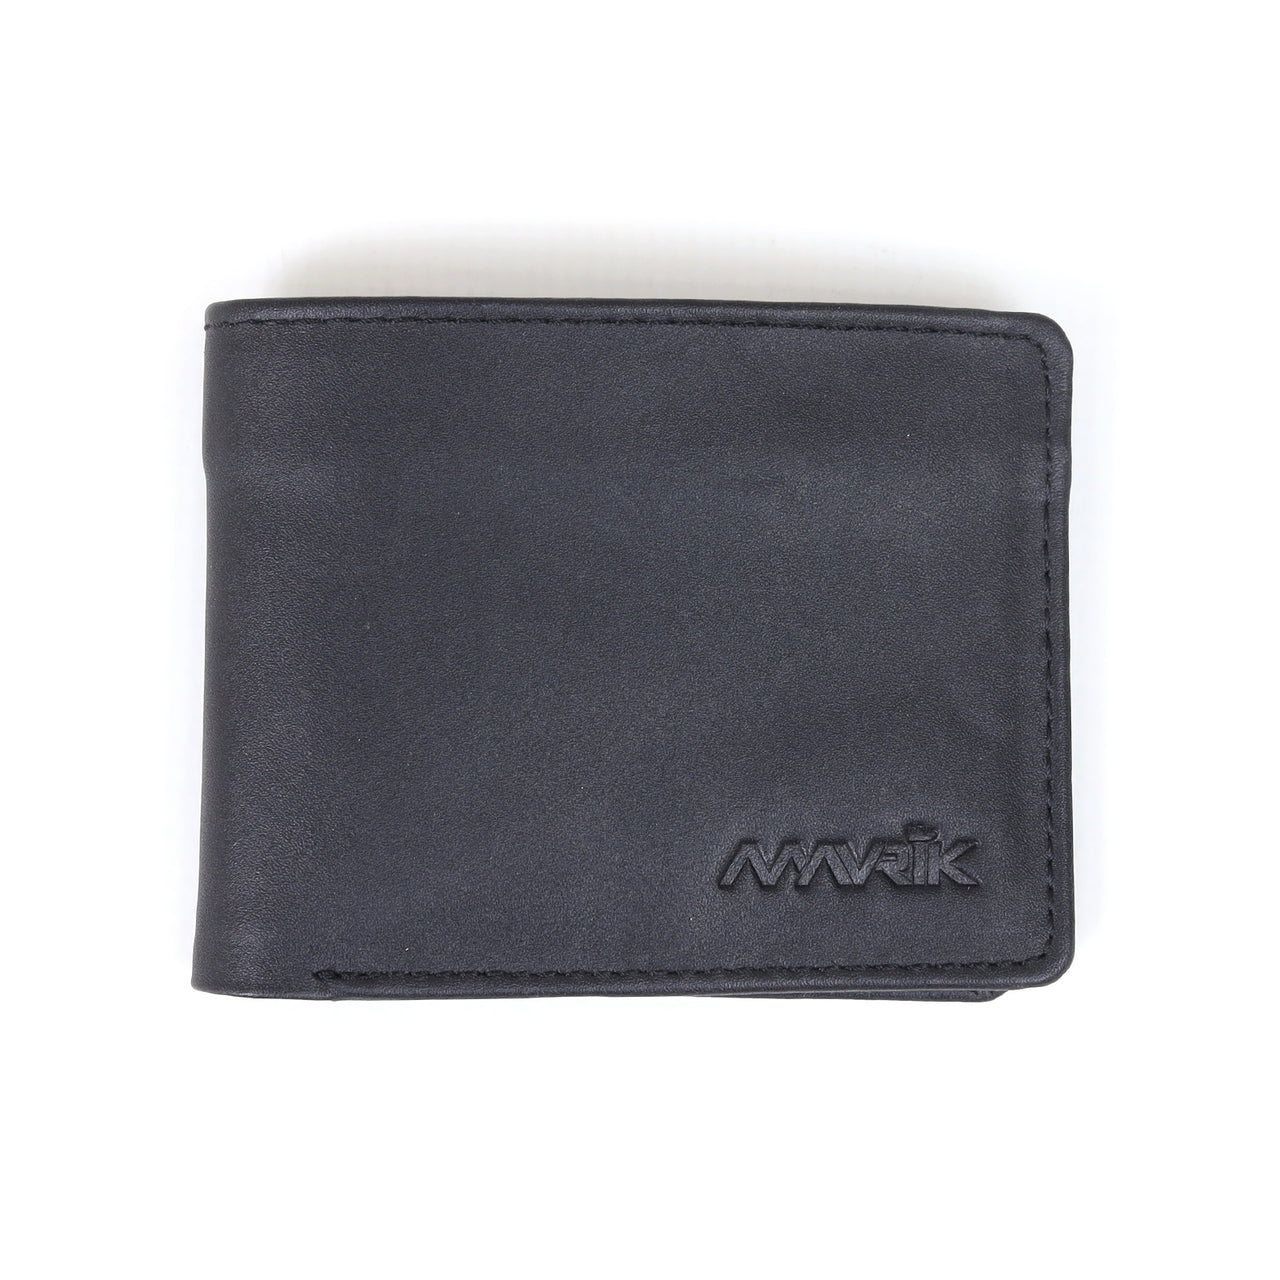 a-sb-0200056- wallets